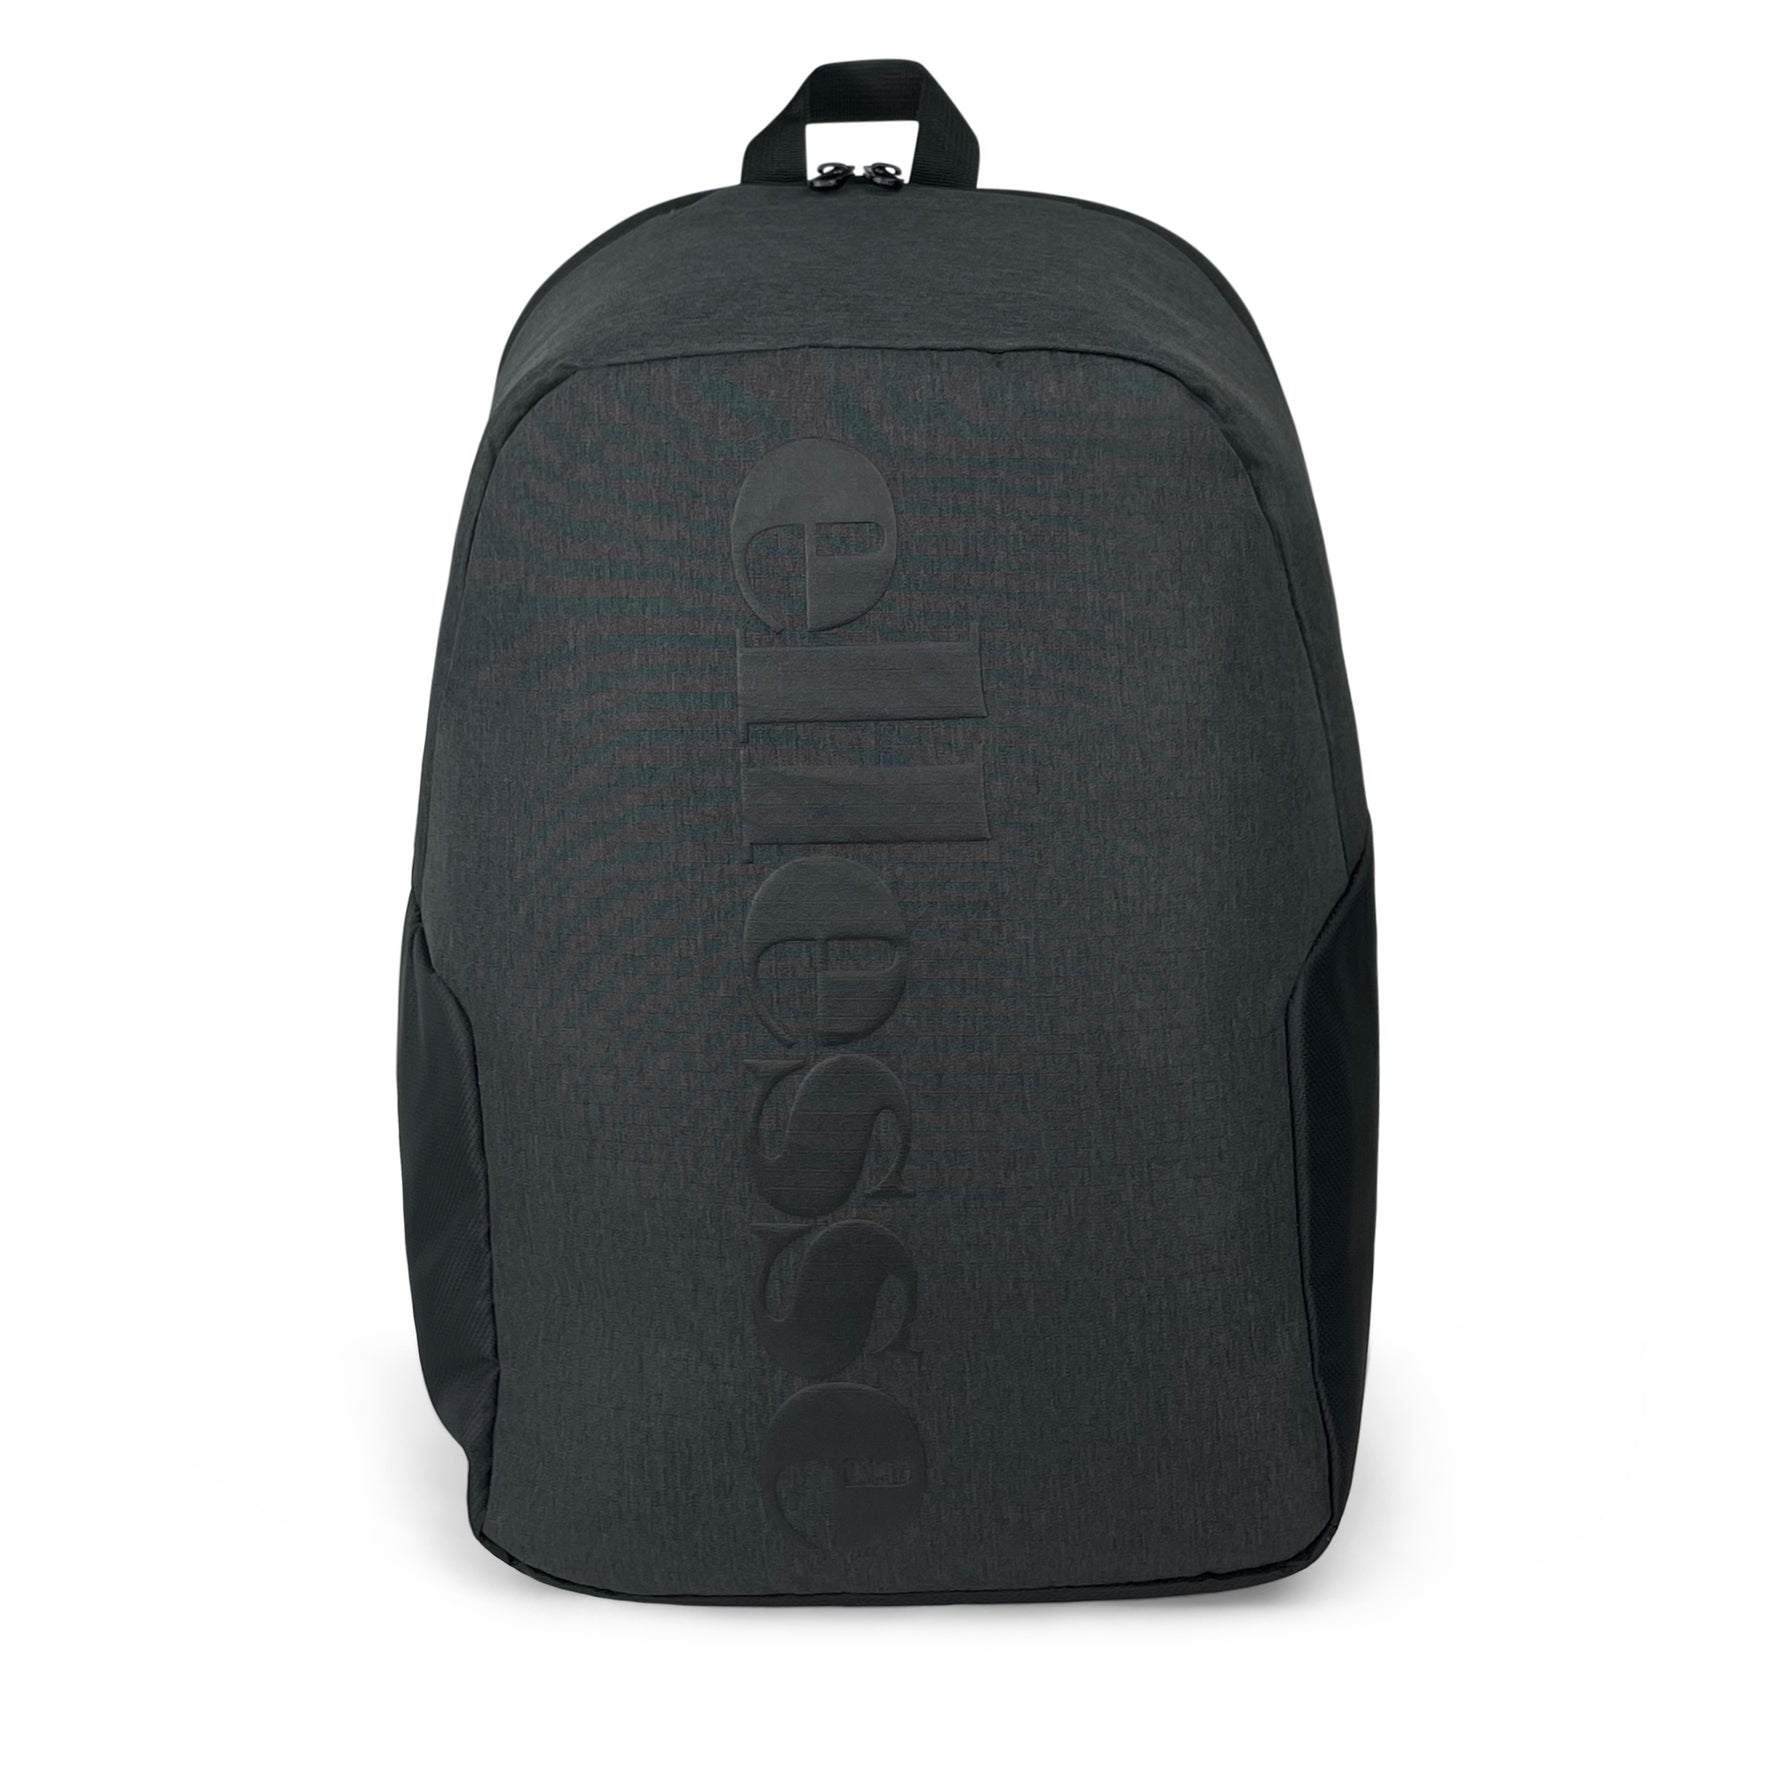 Veneto Laptop Backpack-Backpack-Ellesse-Black/Charcoal-SchoolBagsAndStuff